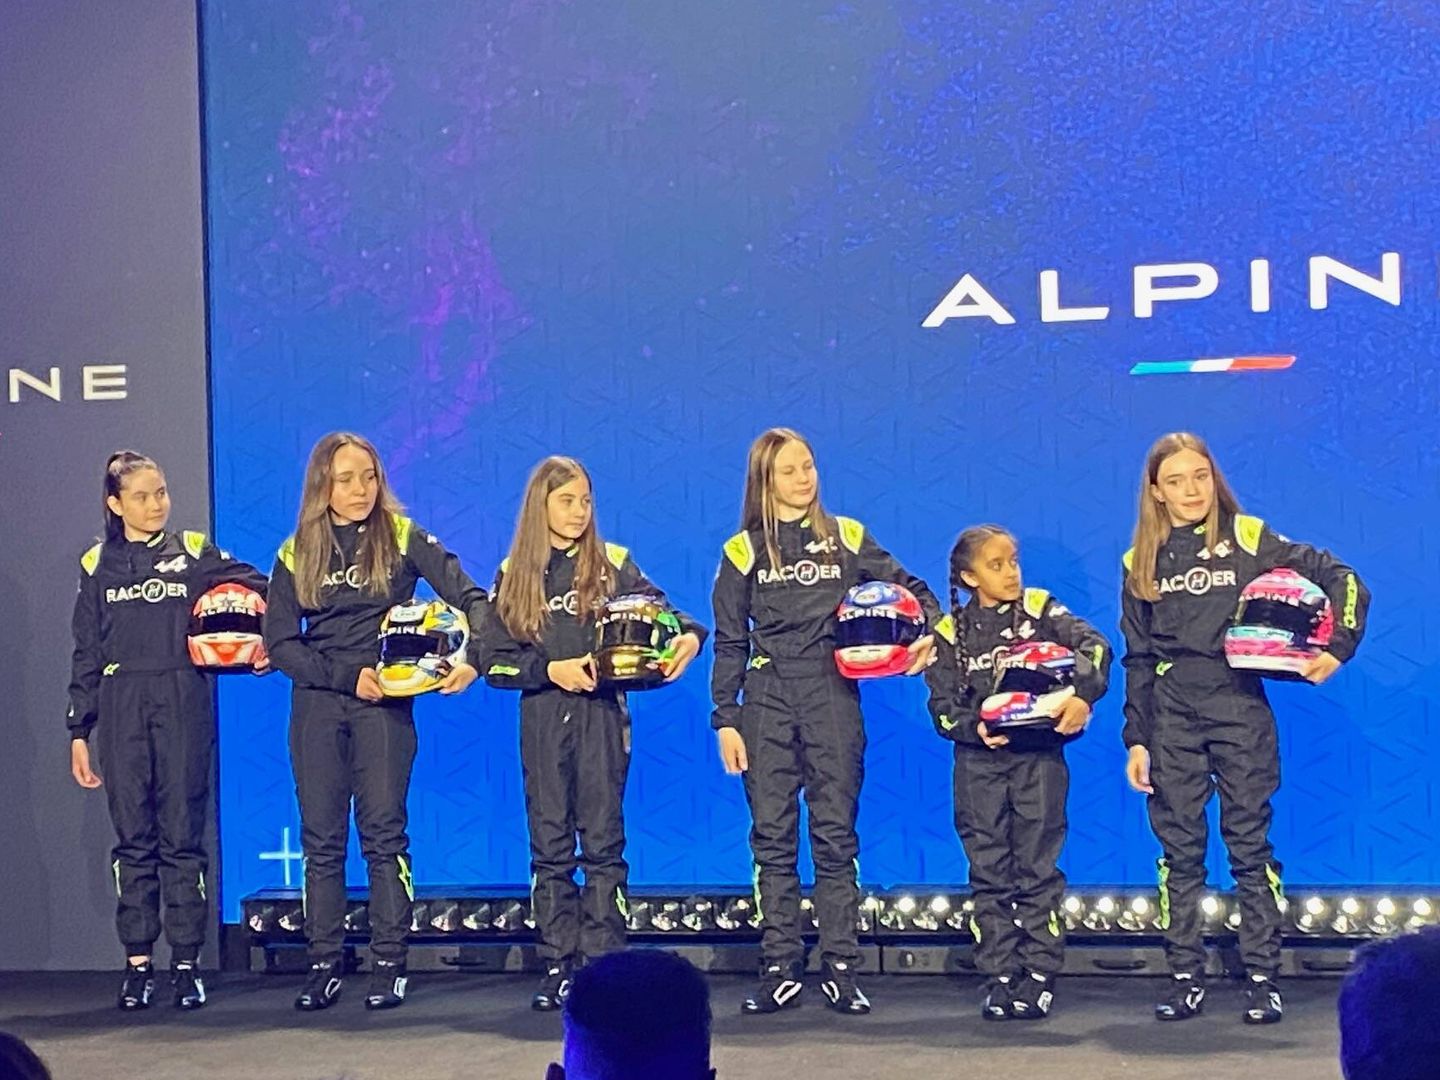 Alpine presentó su programa RacHer, de apoyo al pilotaje femenino. (Javier Rubio)